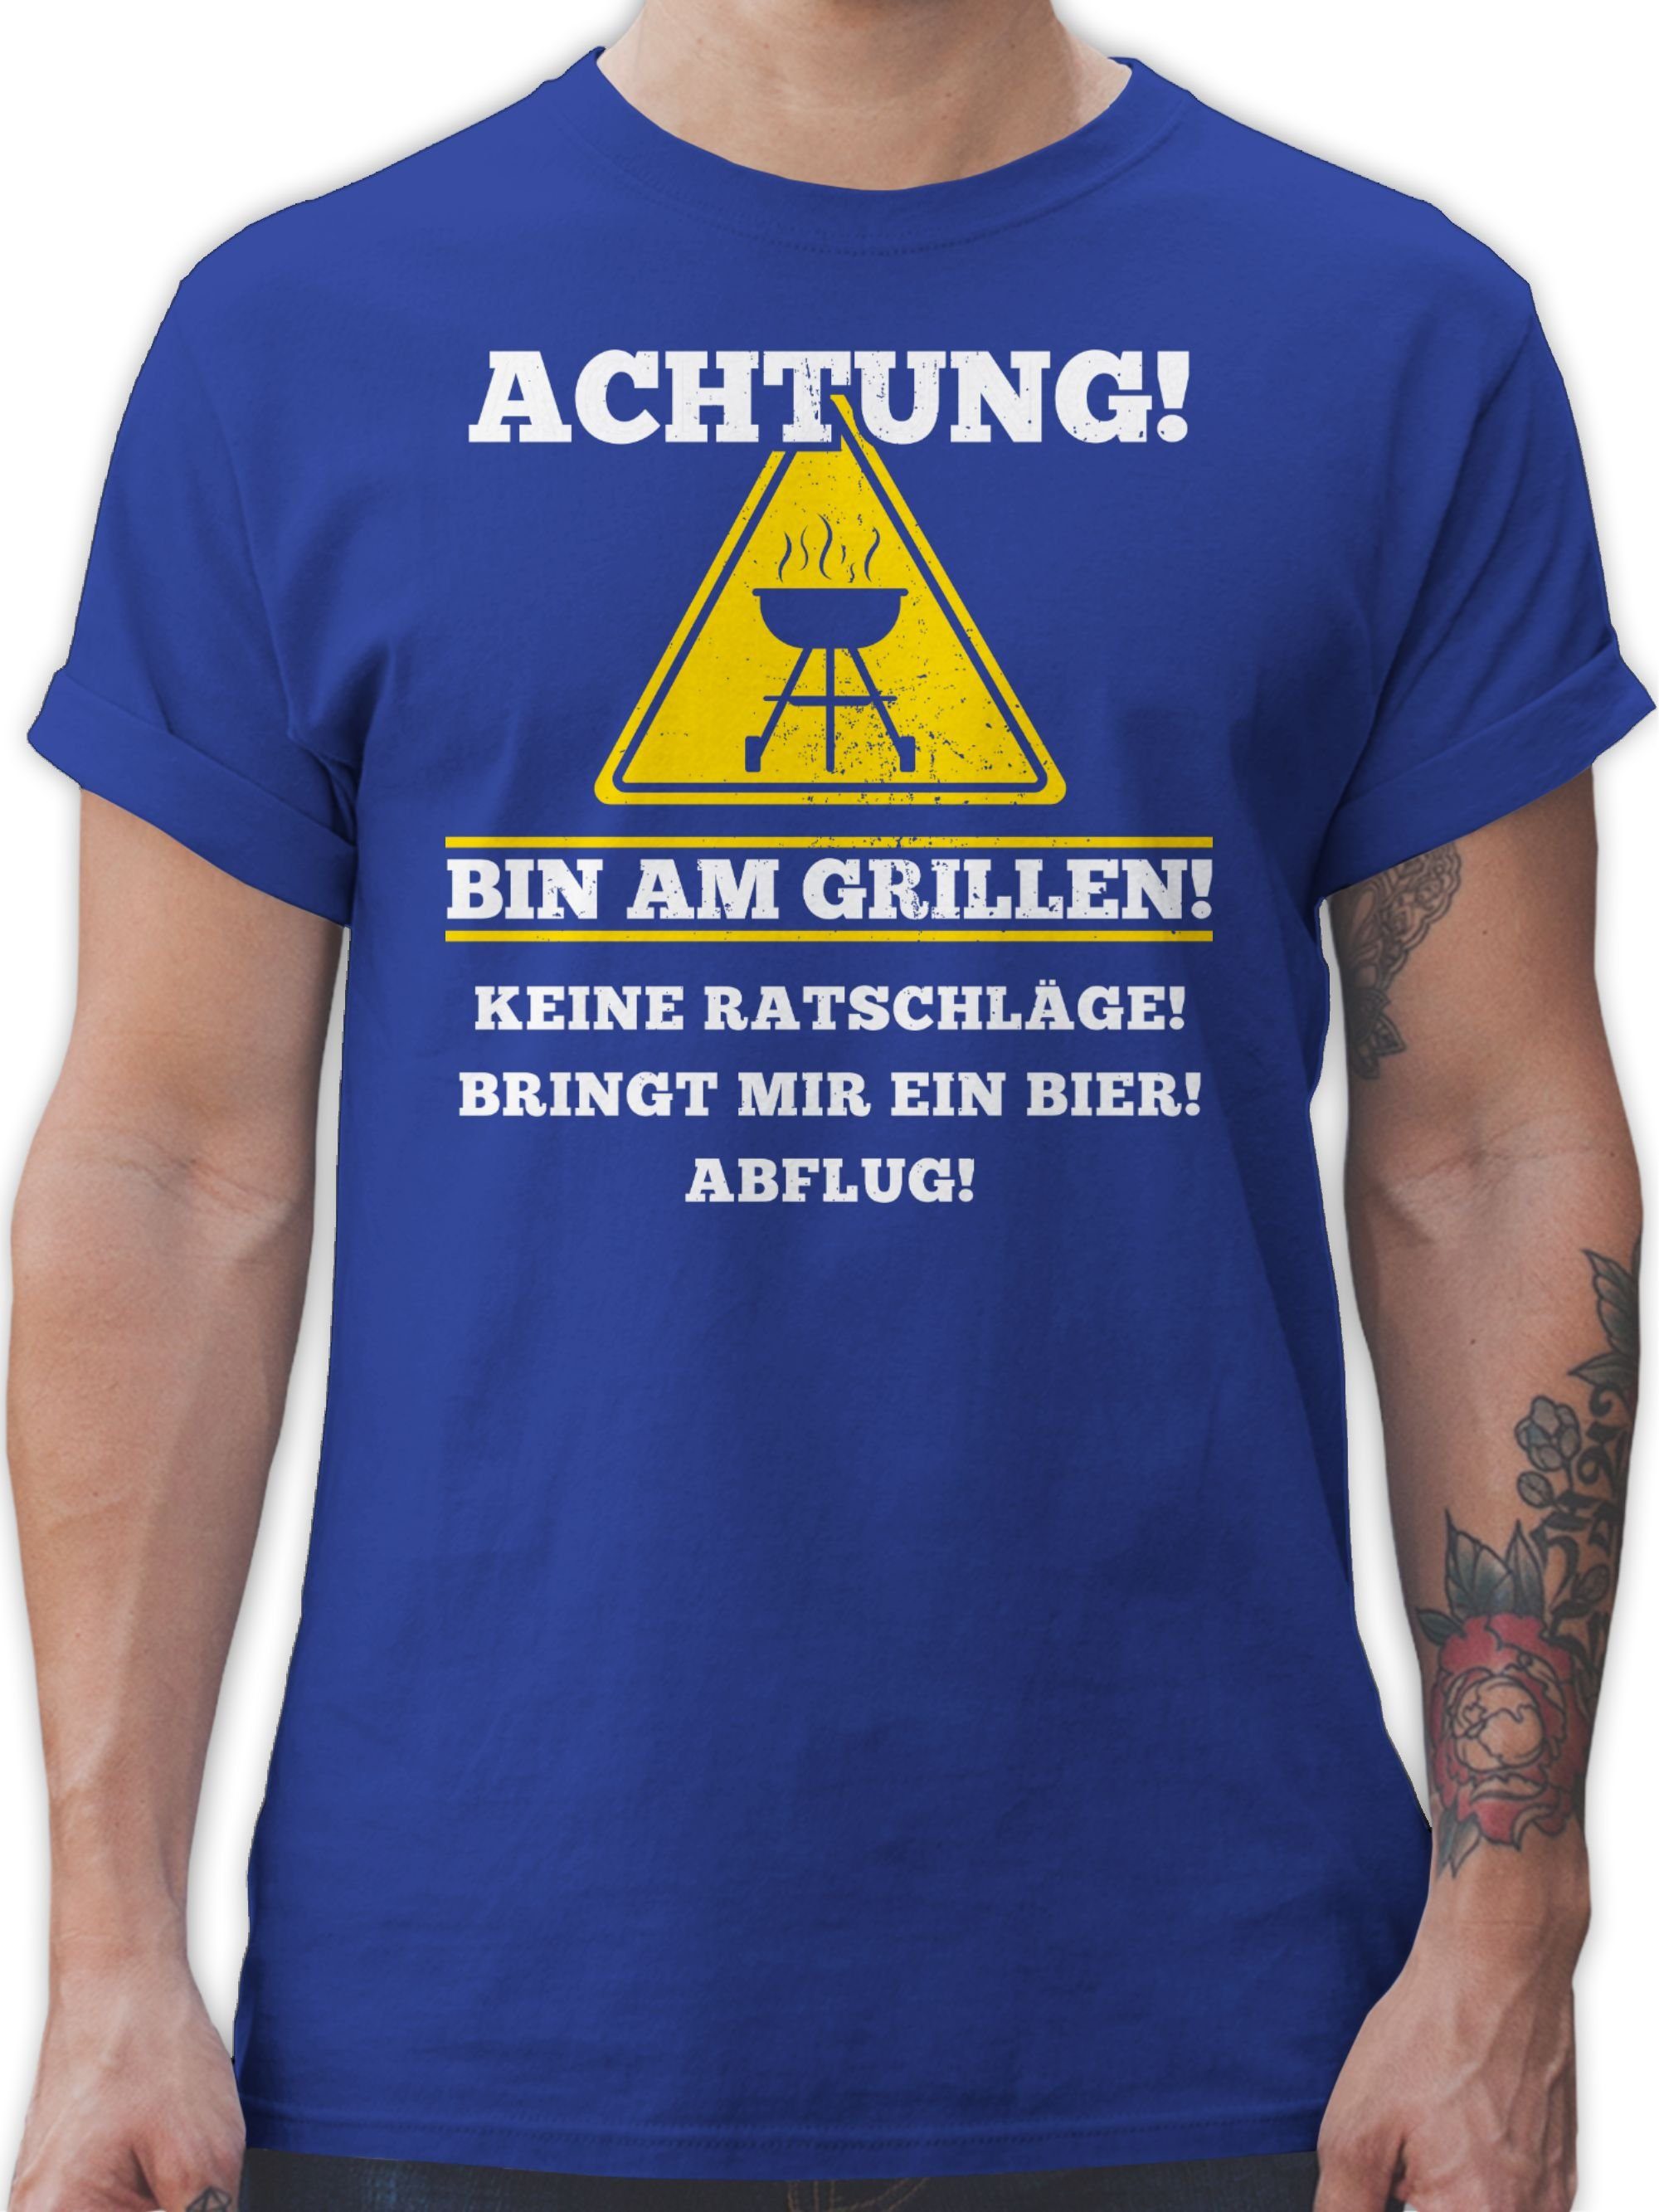 Grillen T-Shirt 3 Royalblau Bin am Grillzubehör Geschenk Shirtracer & Grillen